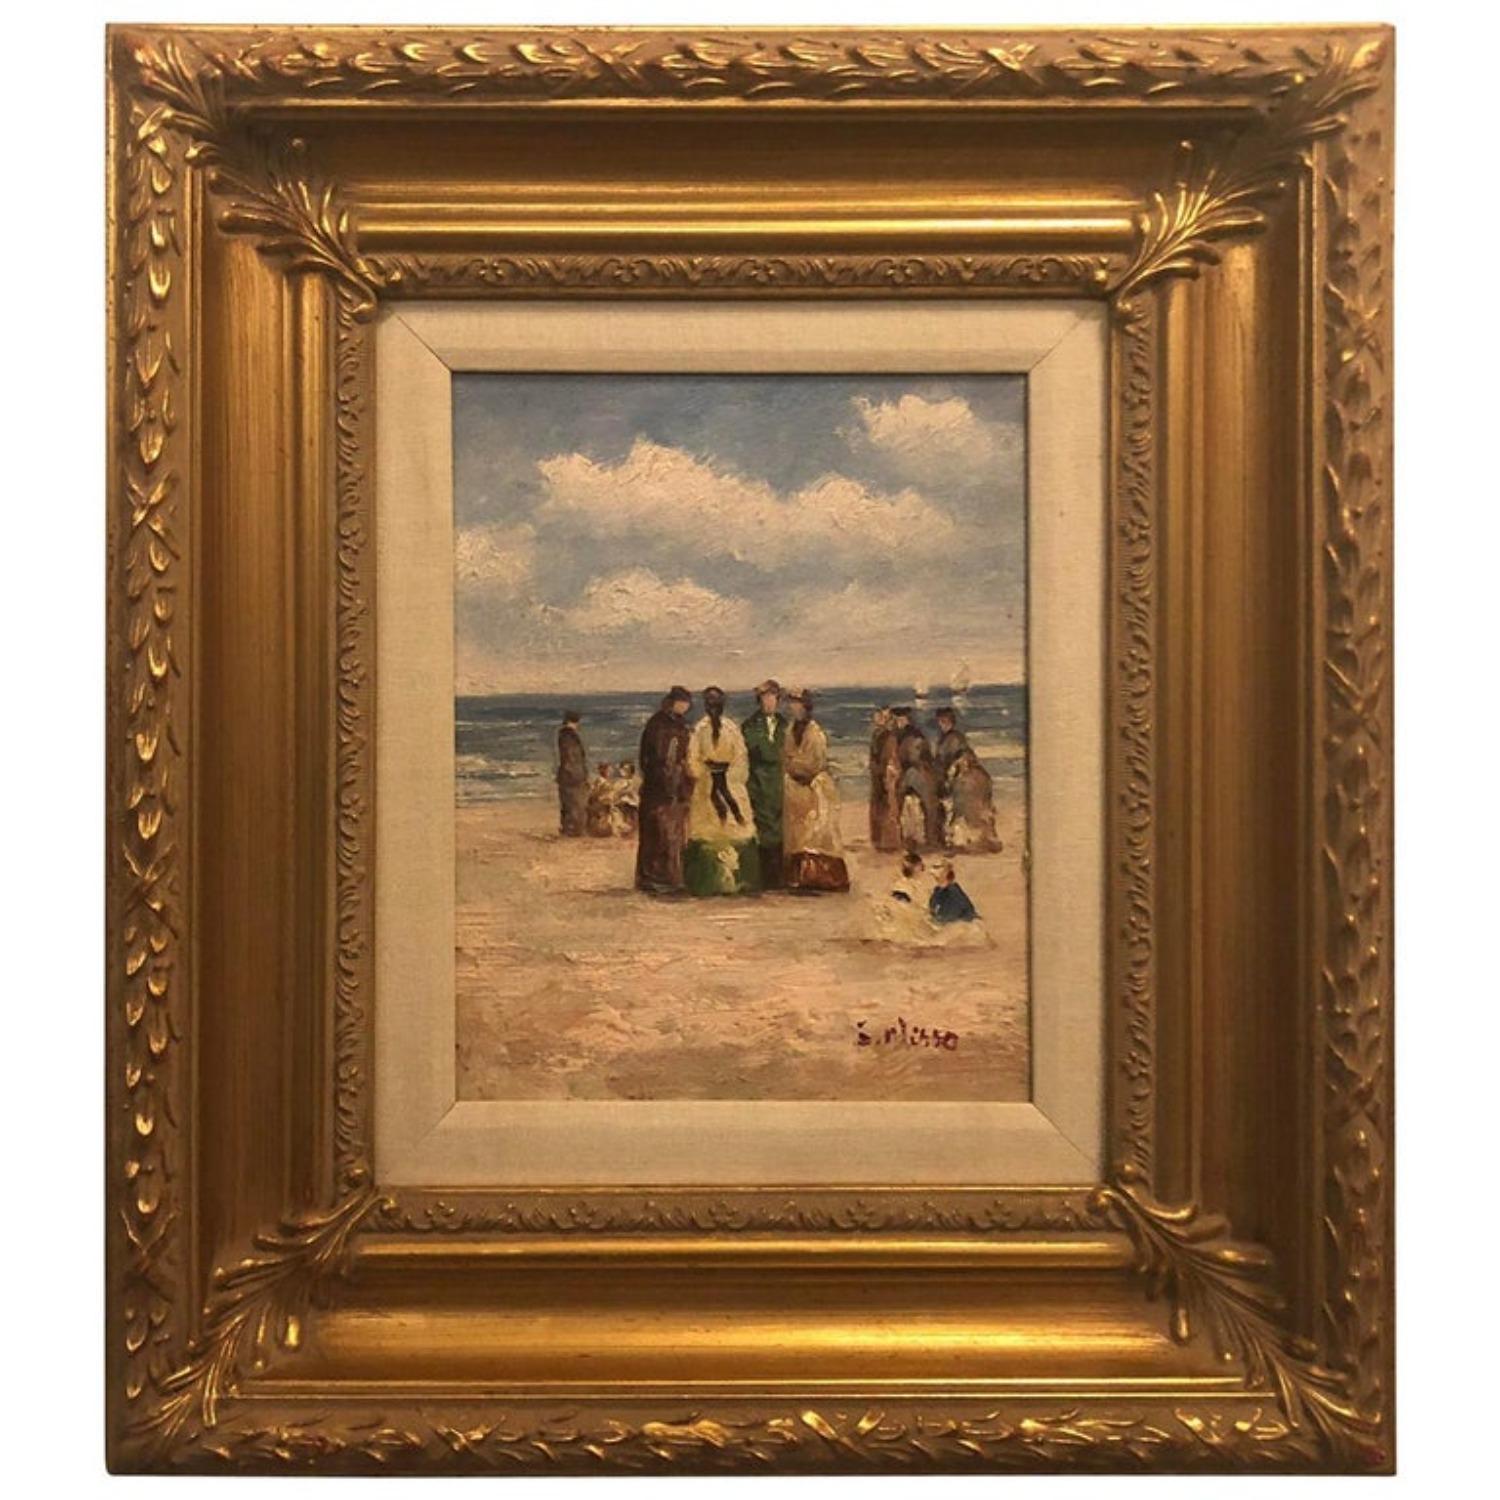 Landscape Painting Unknown - Peinture impressionniste de plage à l'huile sur toile des années 1980, encadrée et signée